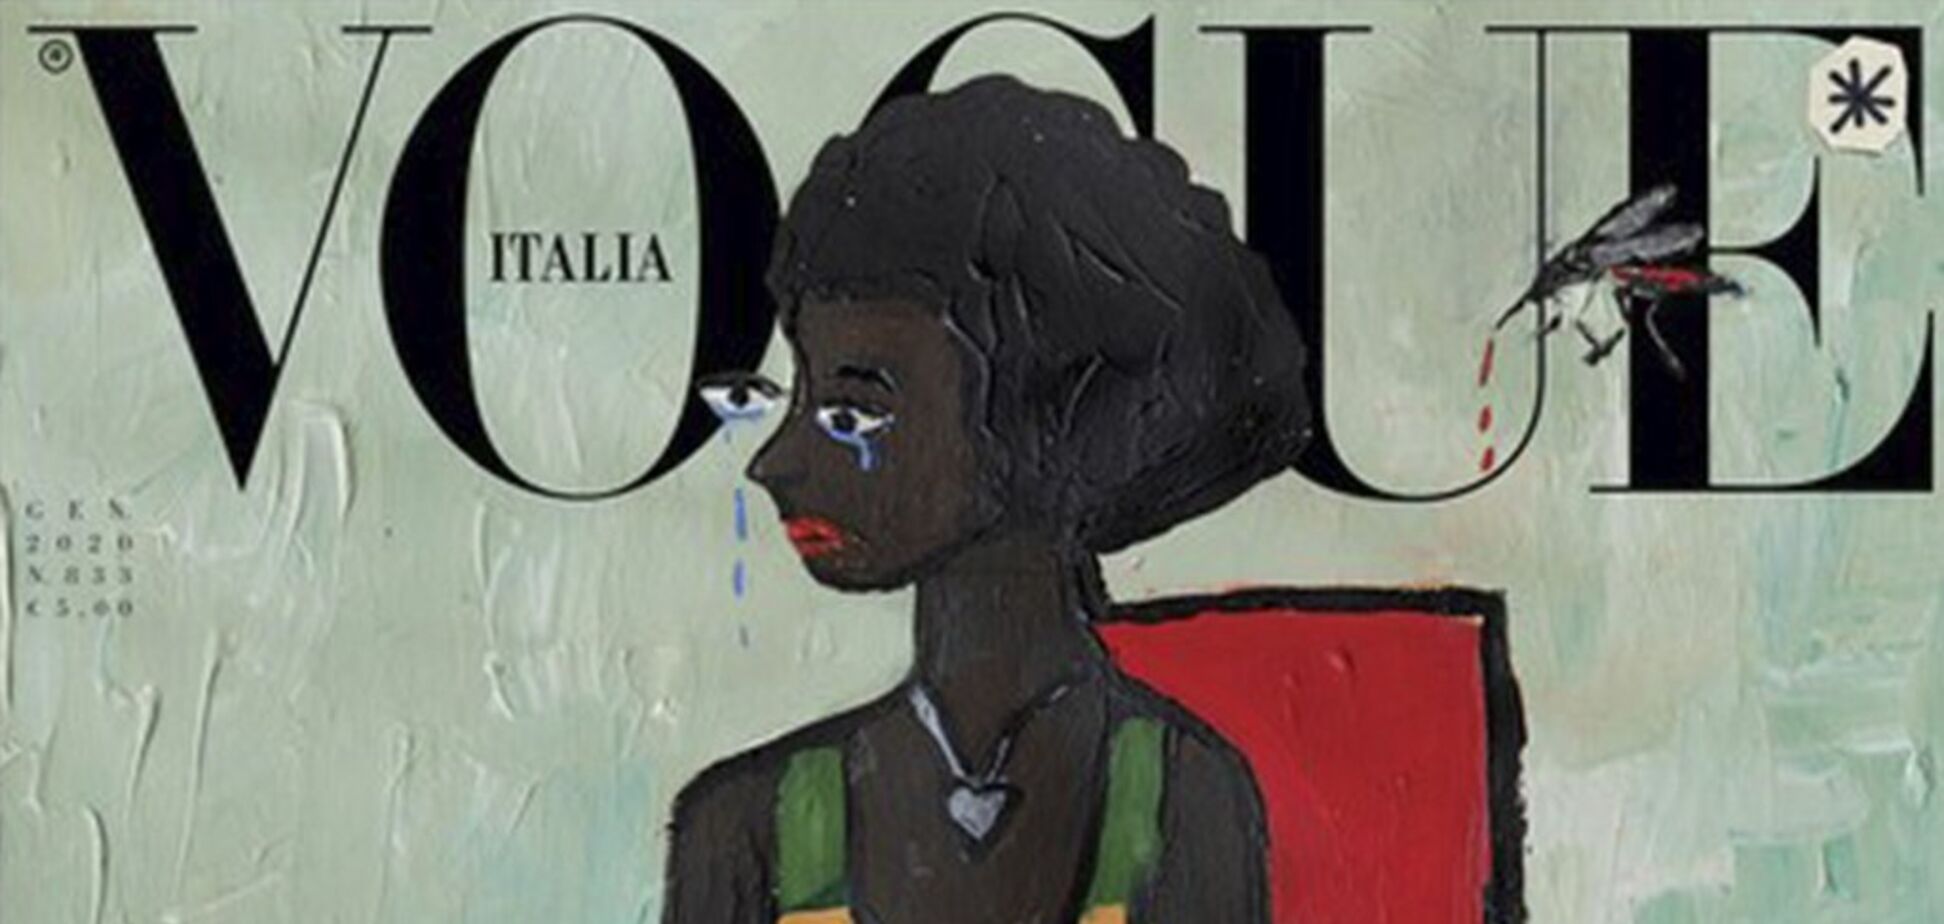 Журнал Vogue в Італії вперше випустив номер без єдиної фотографії